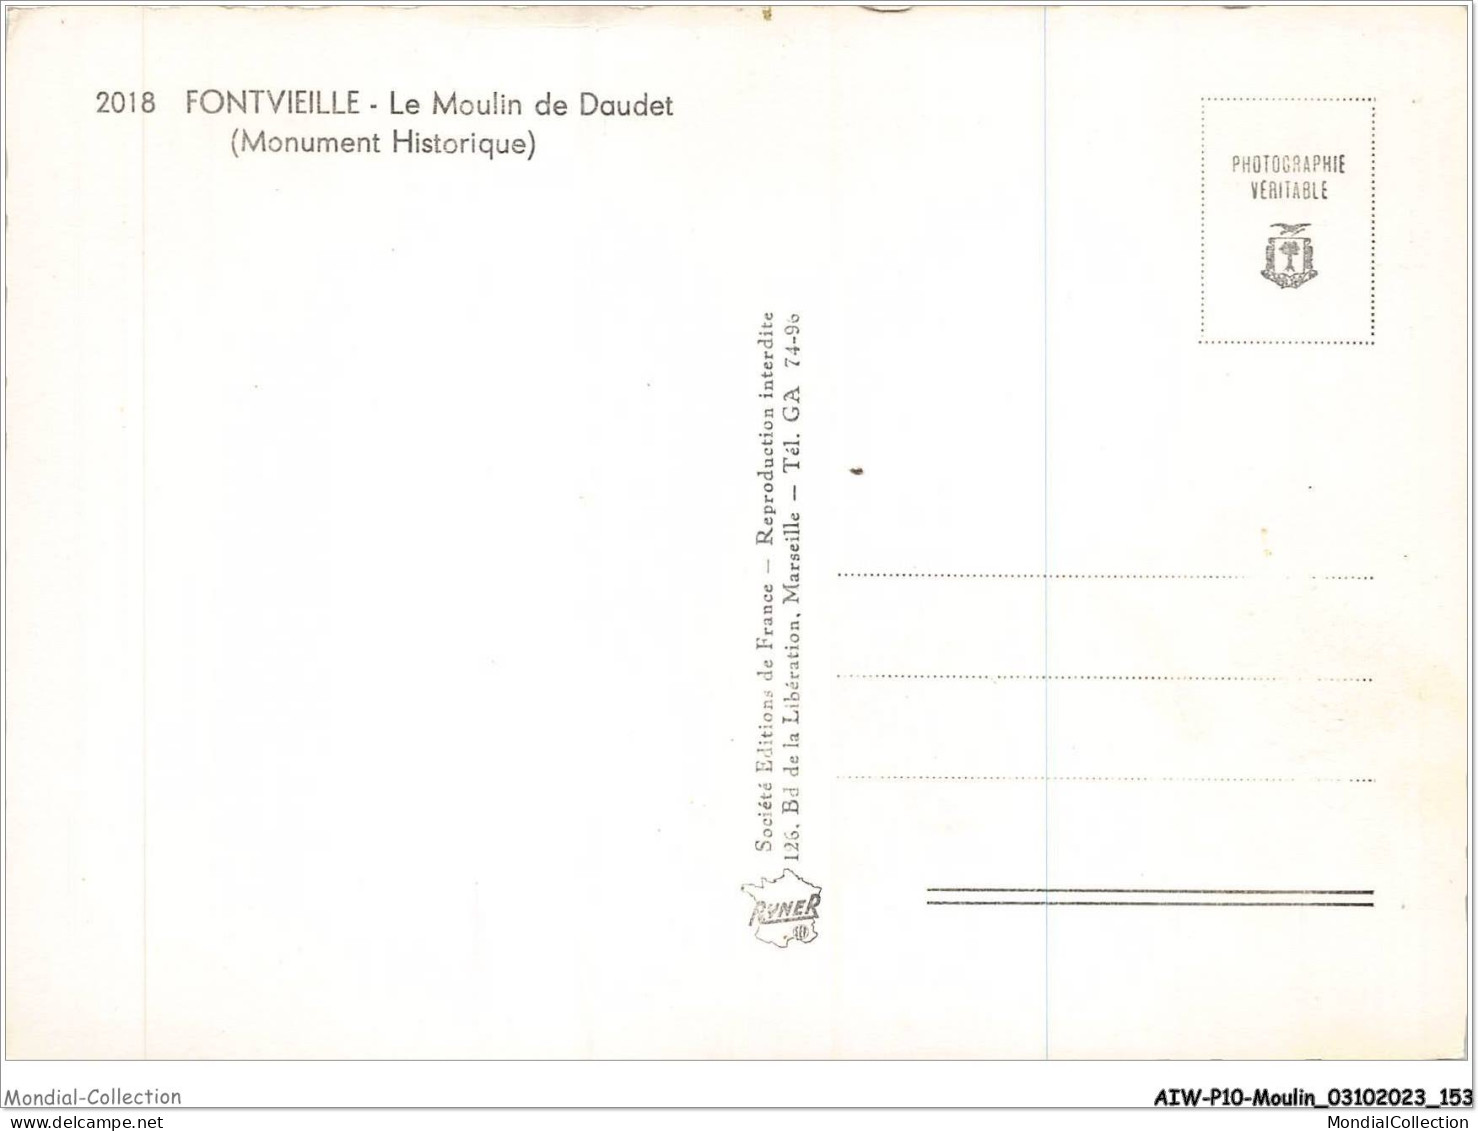 AIWP10-1016 - MOULIN - FONTVIEILLE - LE MOULIN DE DAUDET - MONUMENT HISTORIQUE   - Mulini A Vento